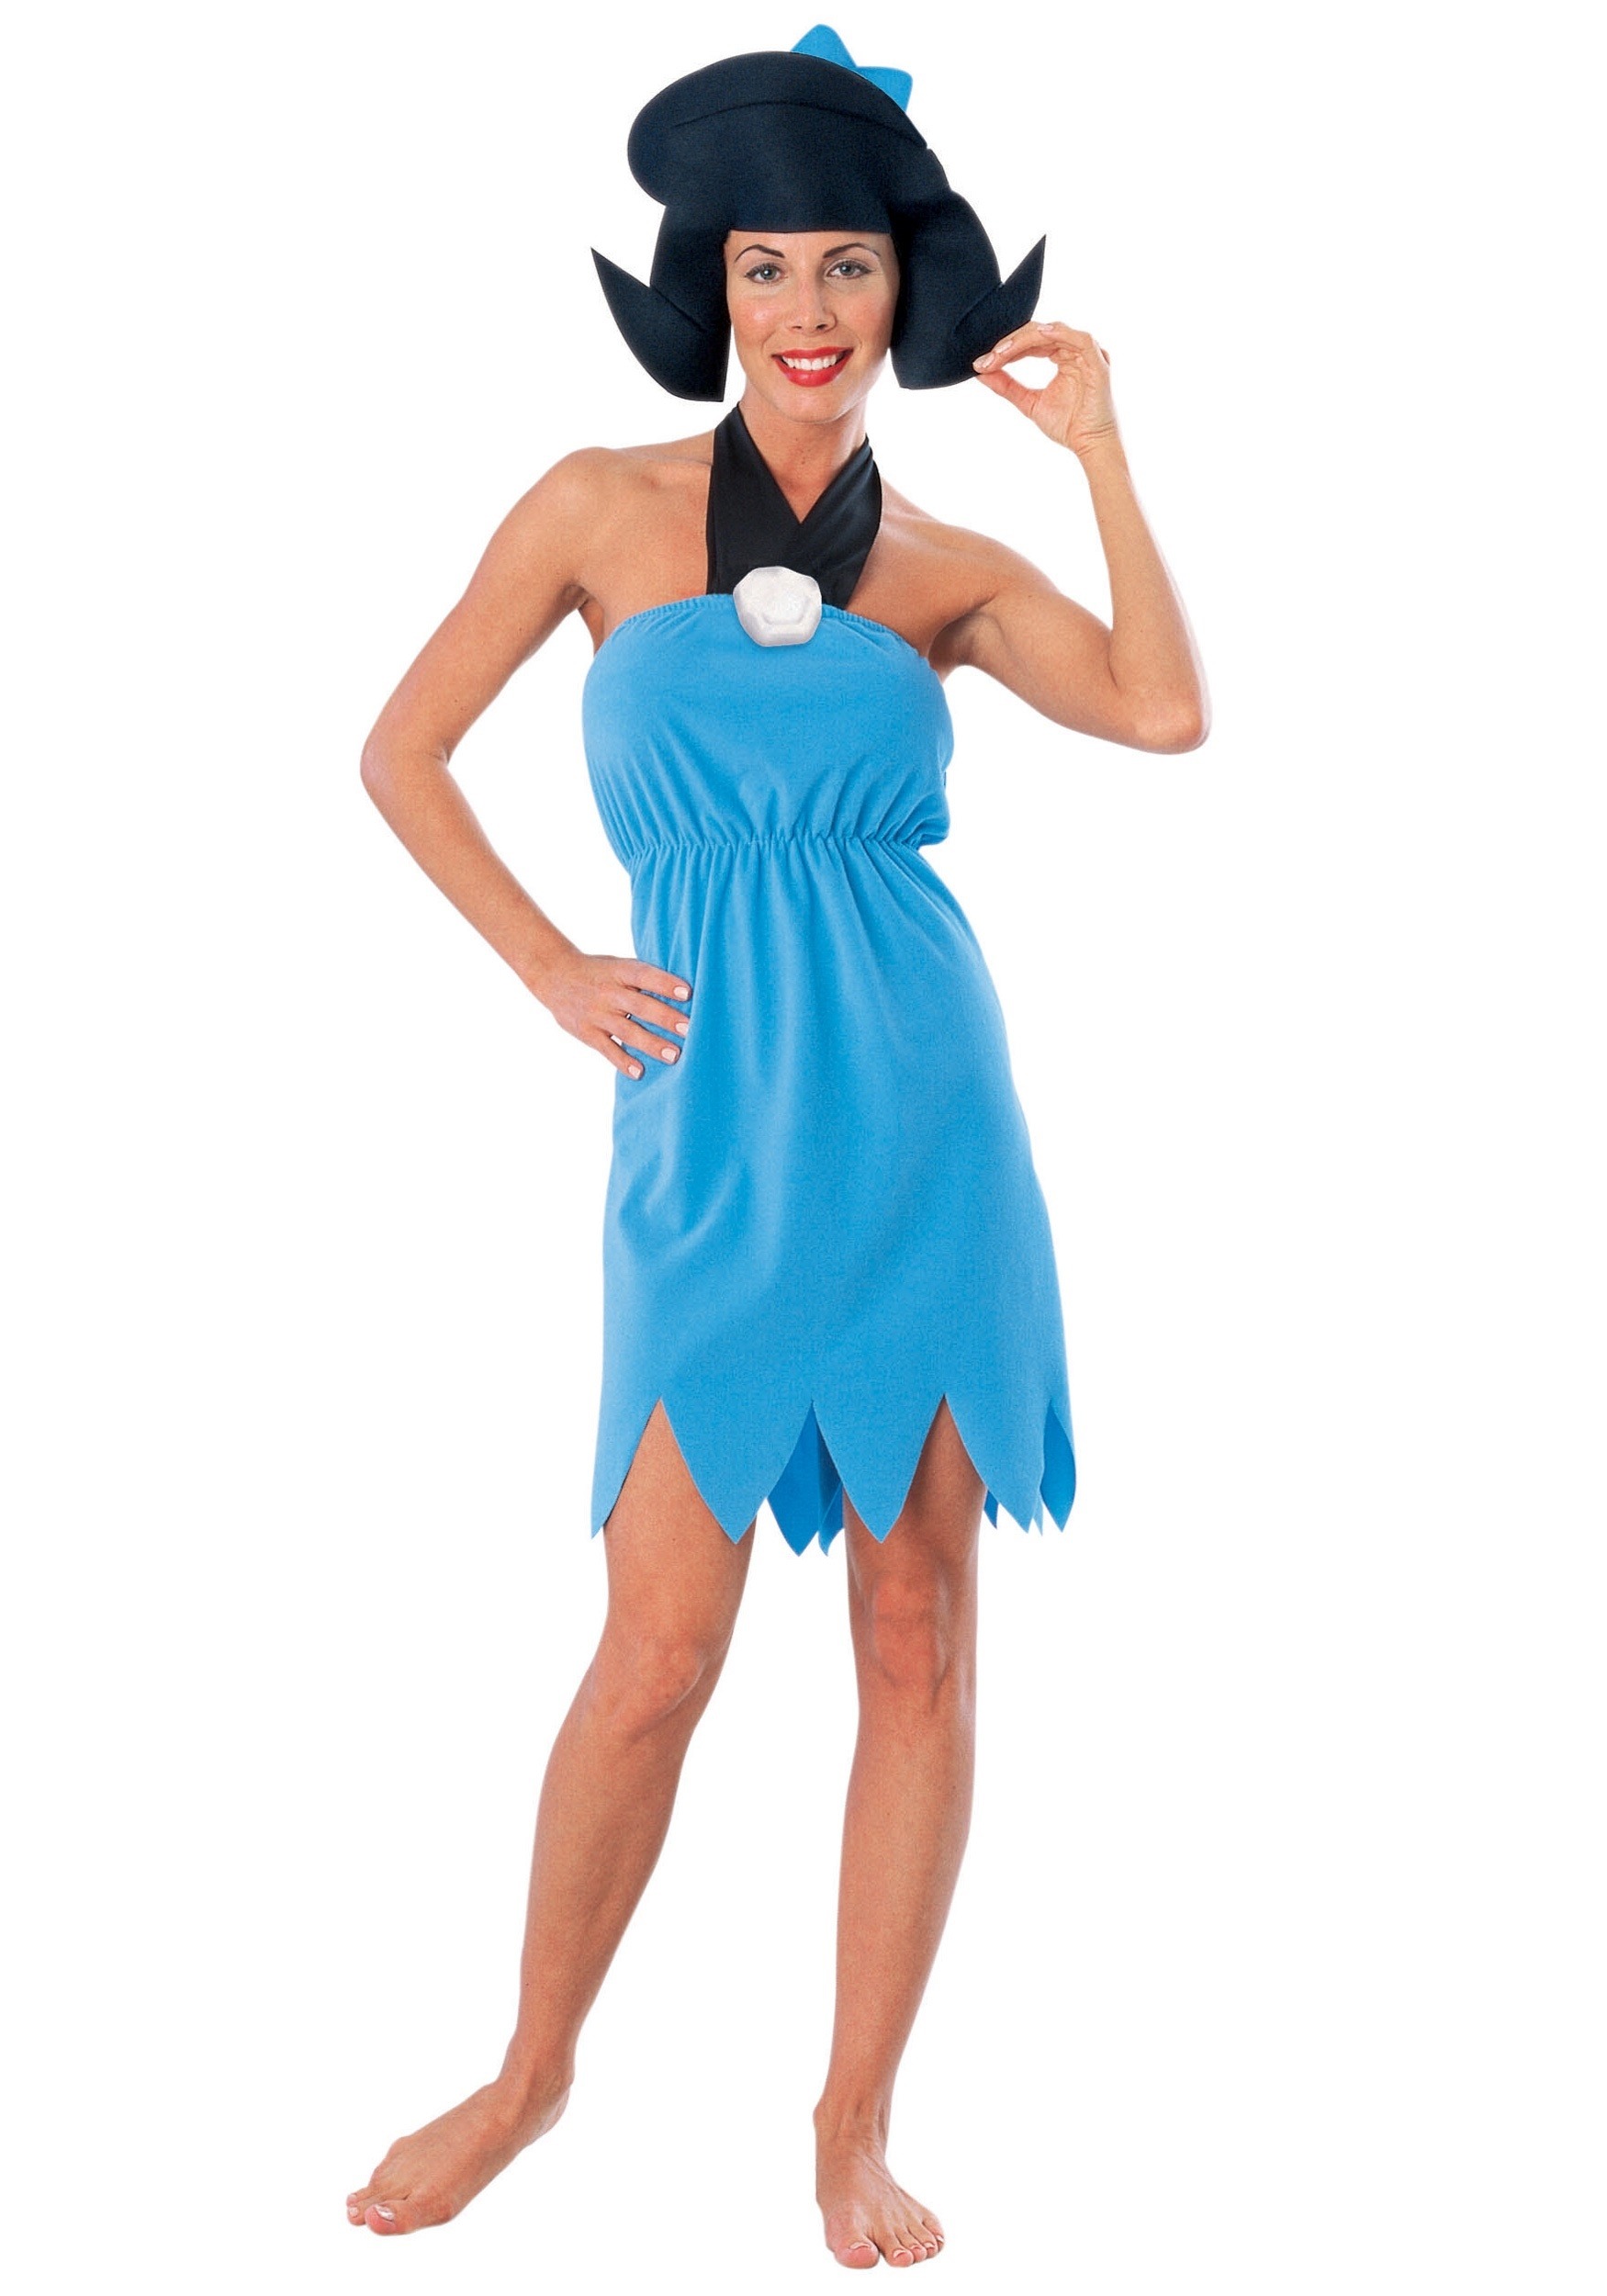 Betty Rubble Fancy Dress Costume For Women , Flintstones Fancy Dress Costumes